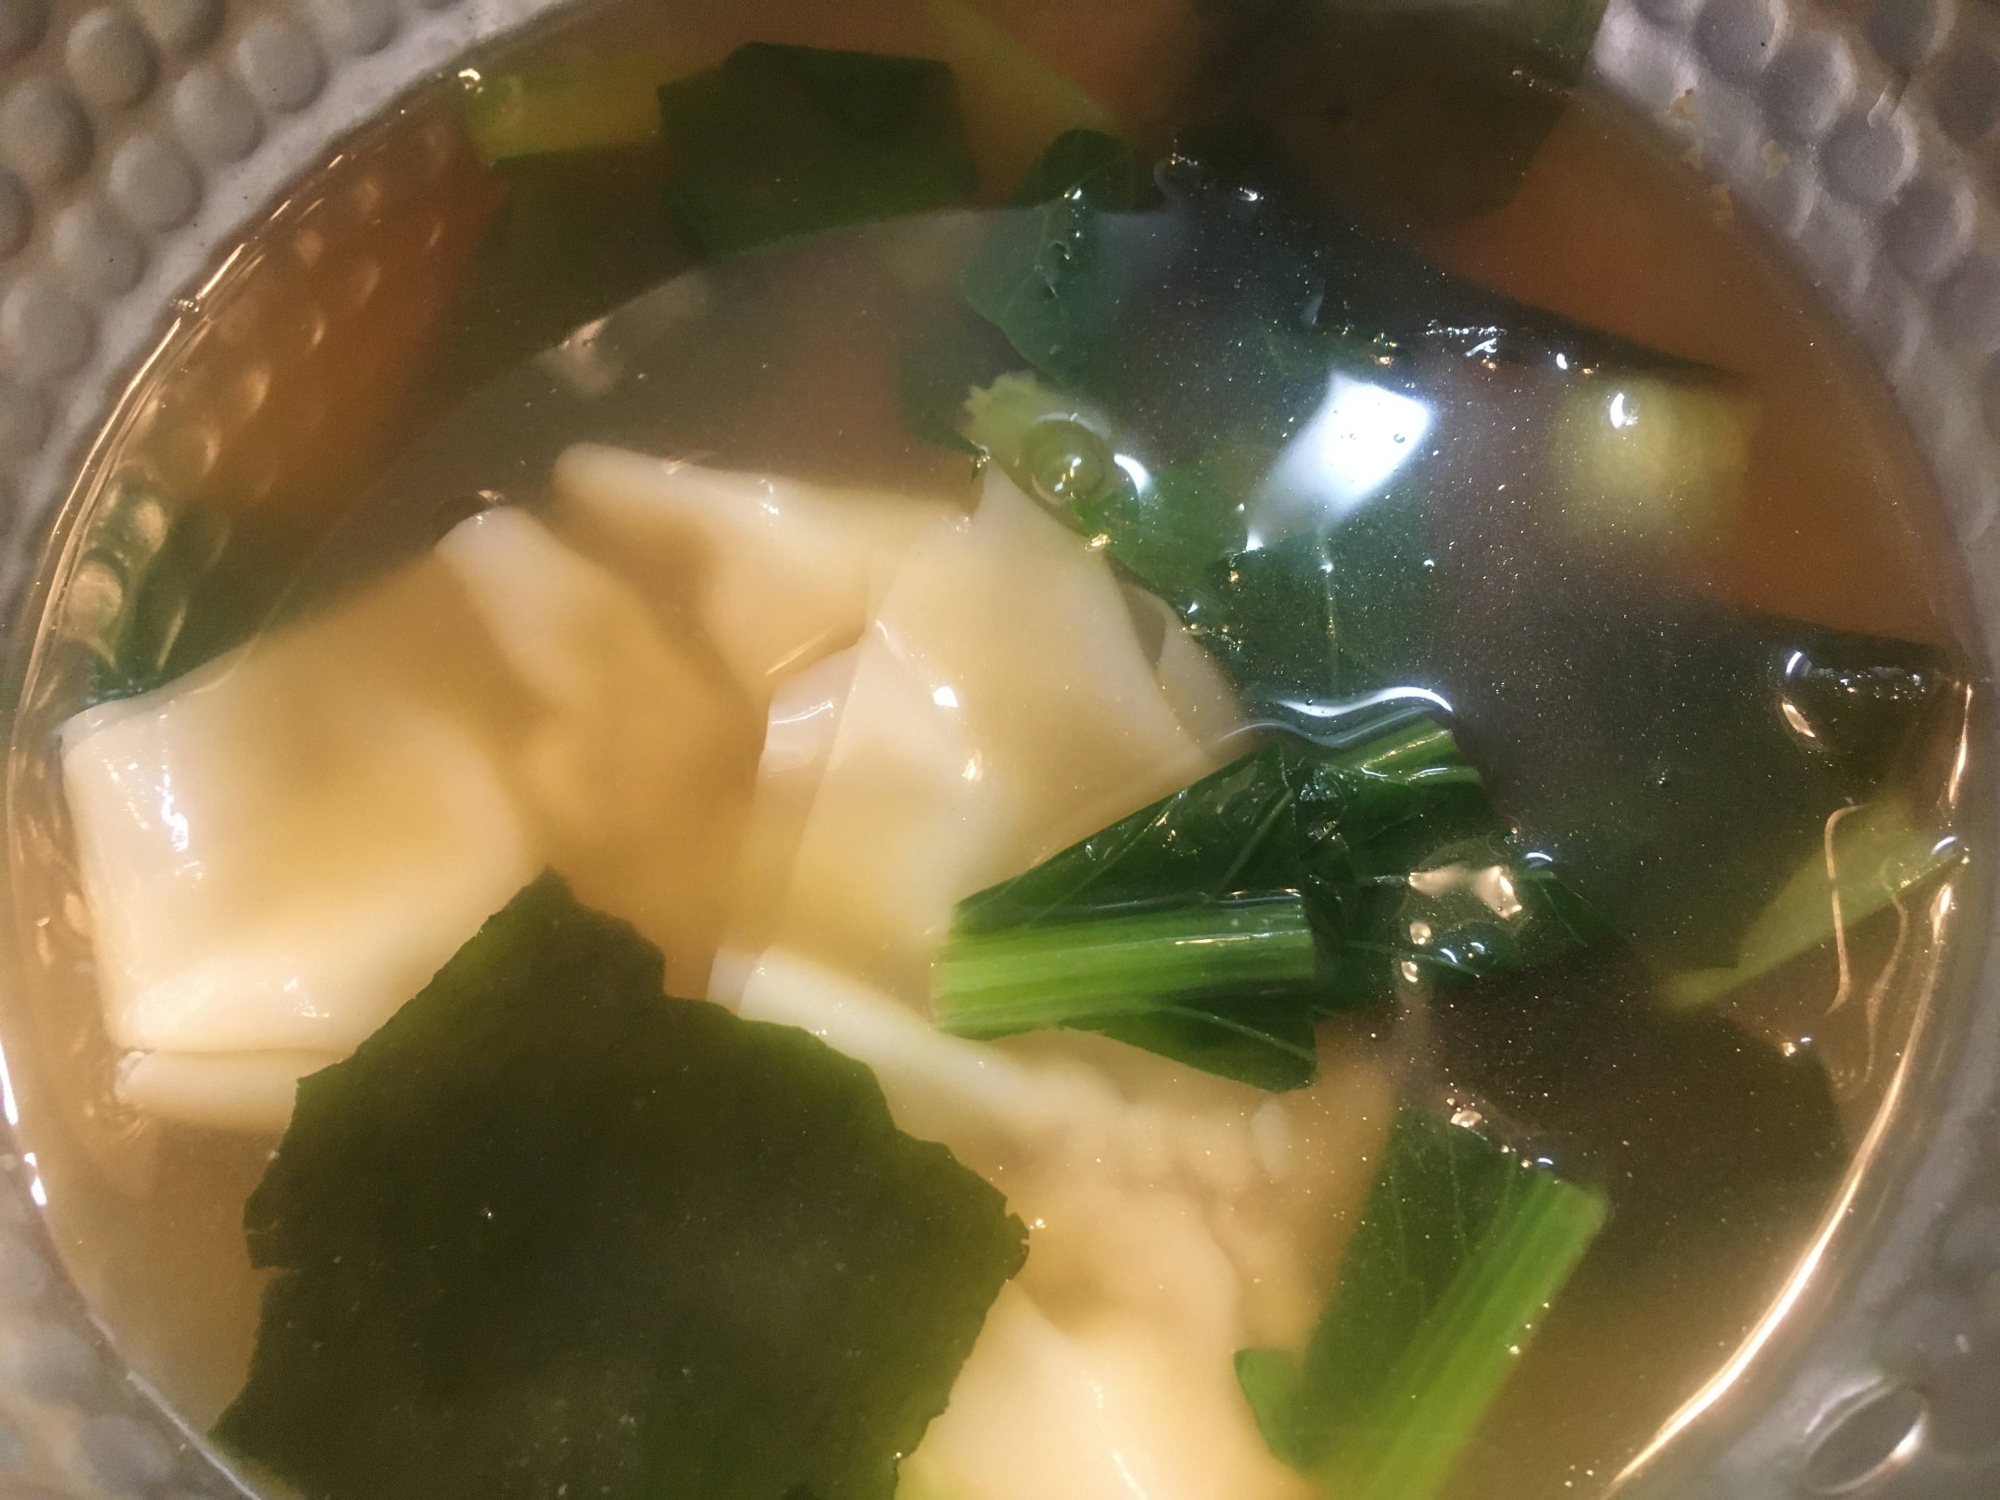 小松菜、ワンタン、わかめの味噌汁